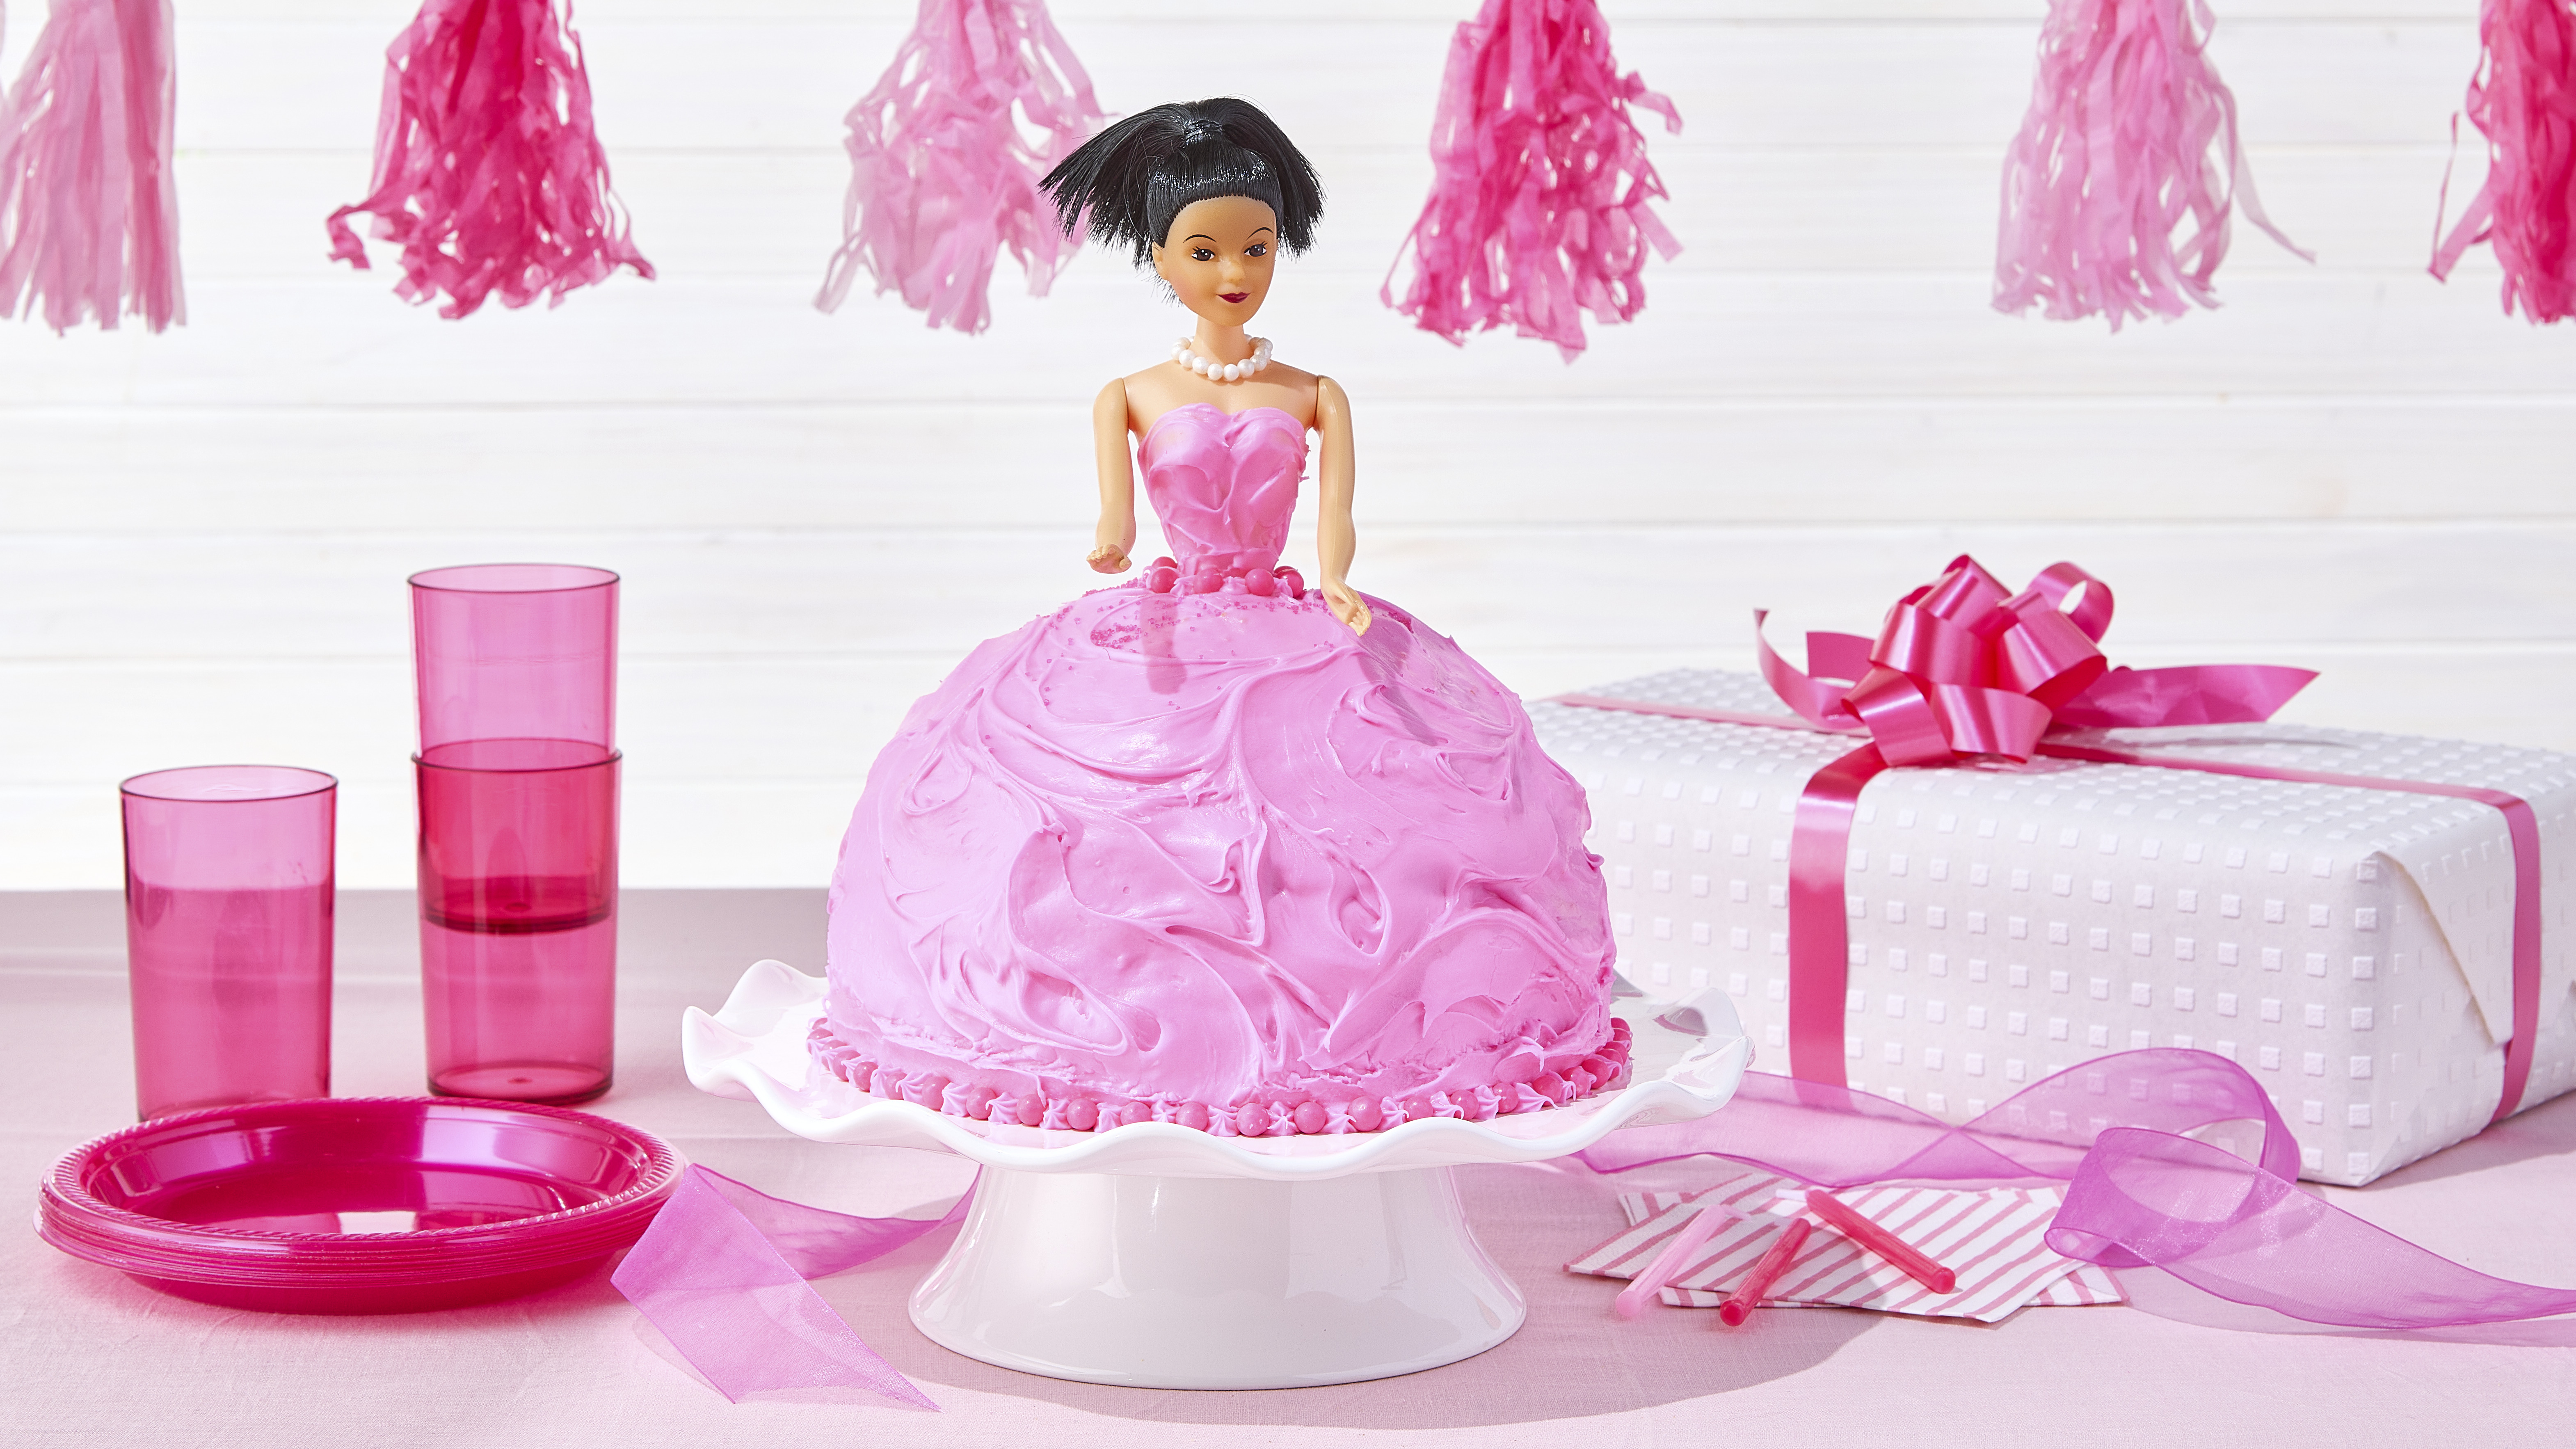 Wedding Dress Cake - Decorated Cake by MLADMAN - CakesDecor